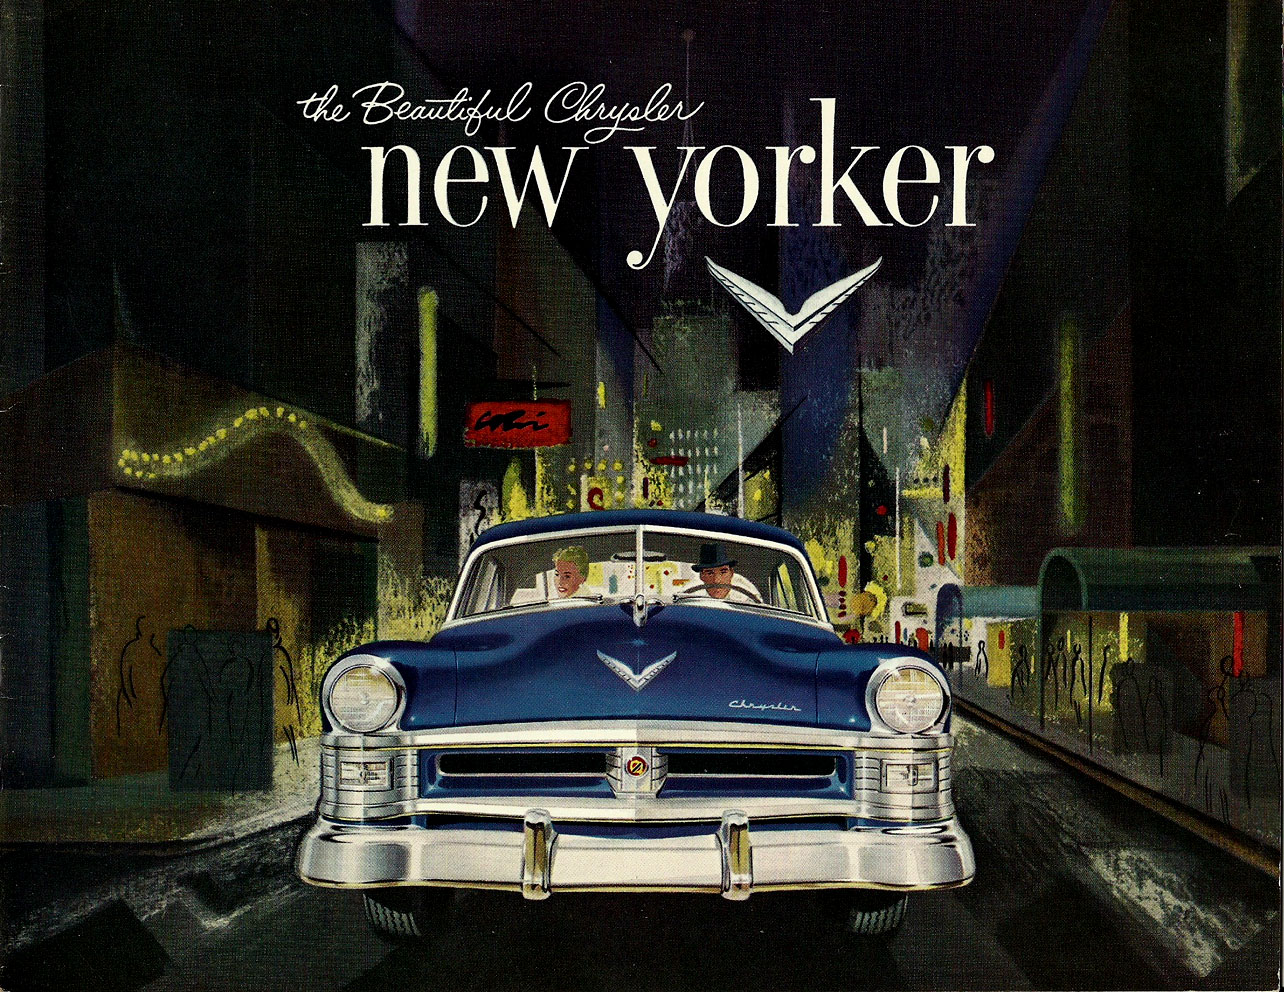 n_1952 Chrysler New Yorker-01.jpg